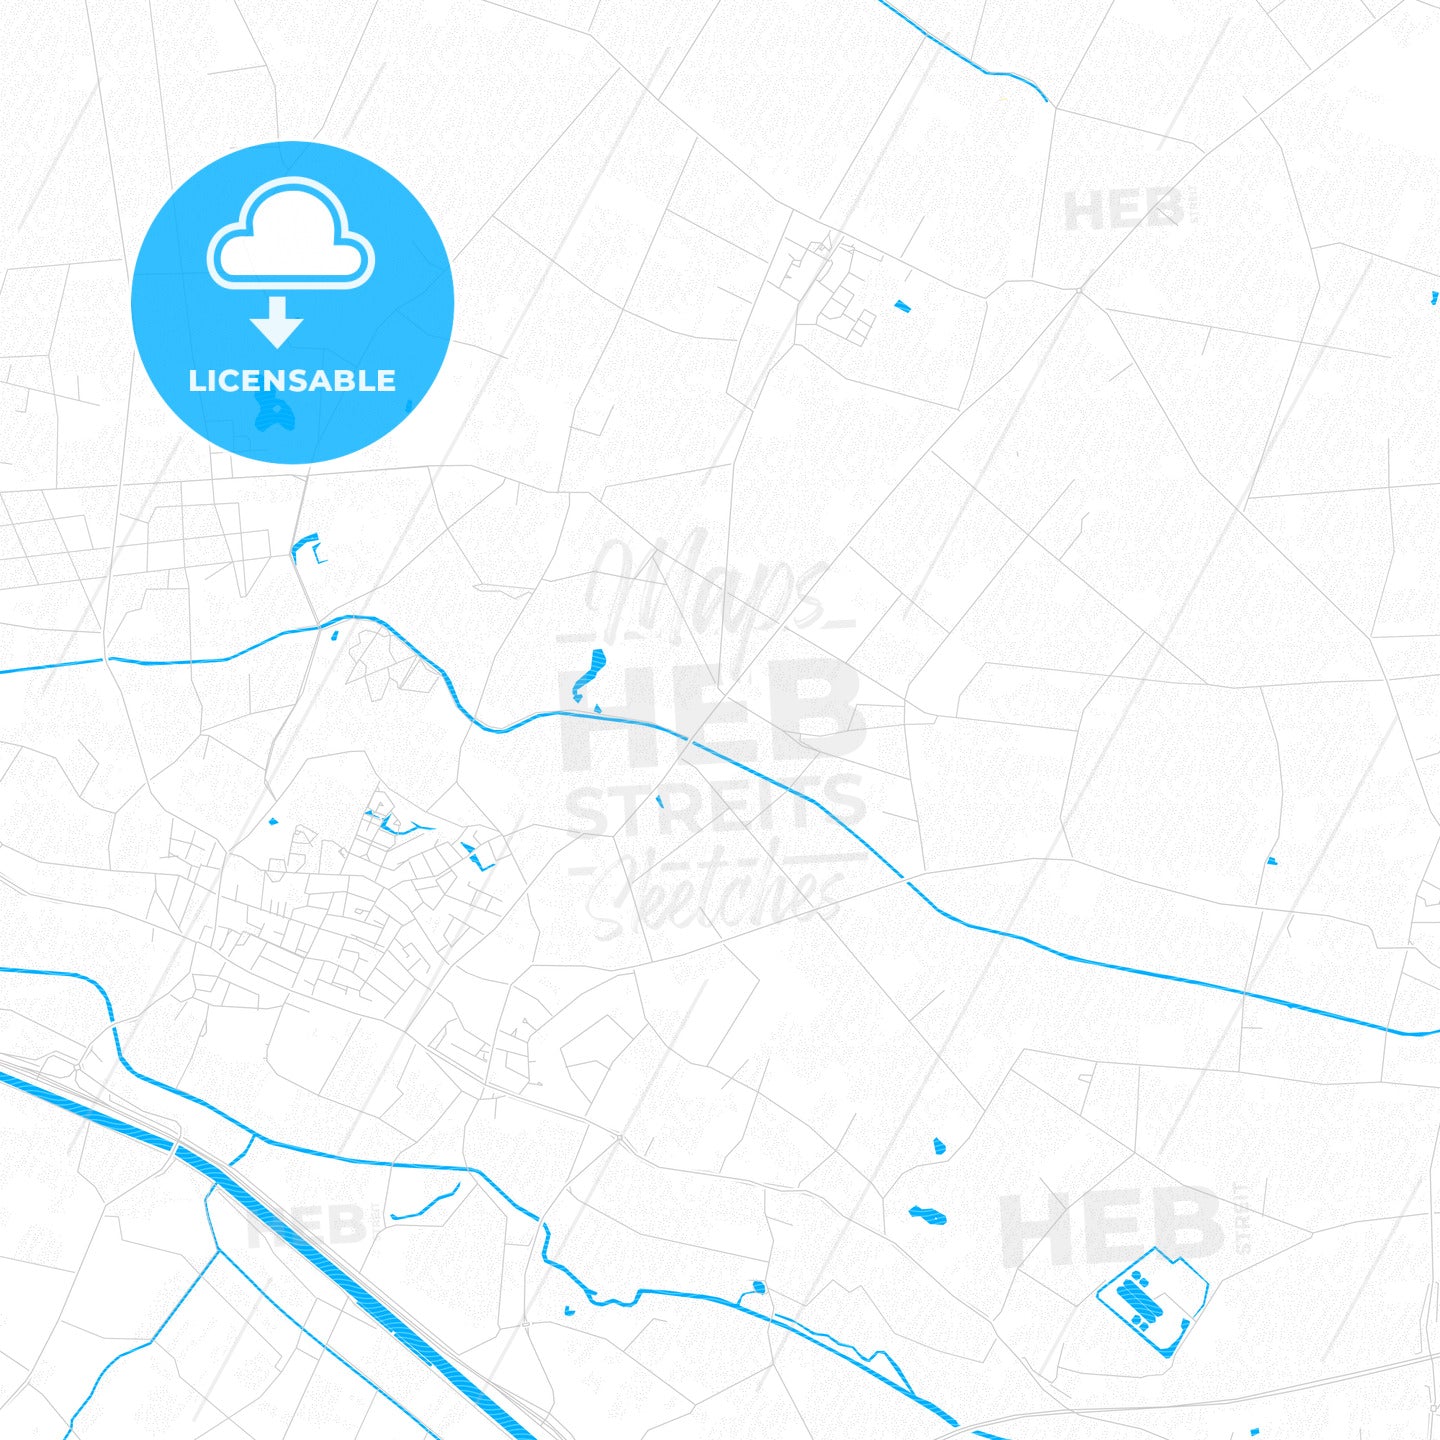 Bernheze, Netherlands PDF vector map with water in focus